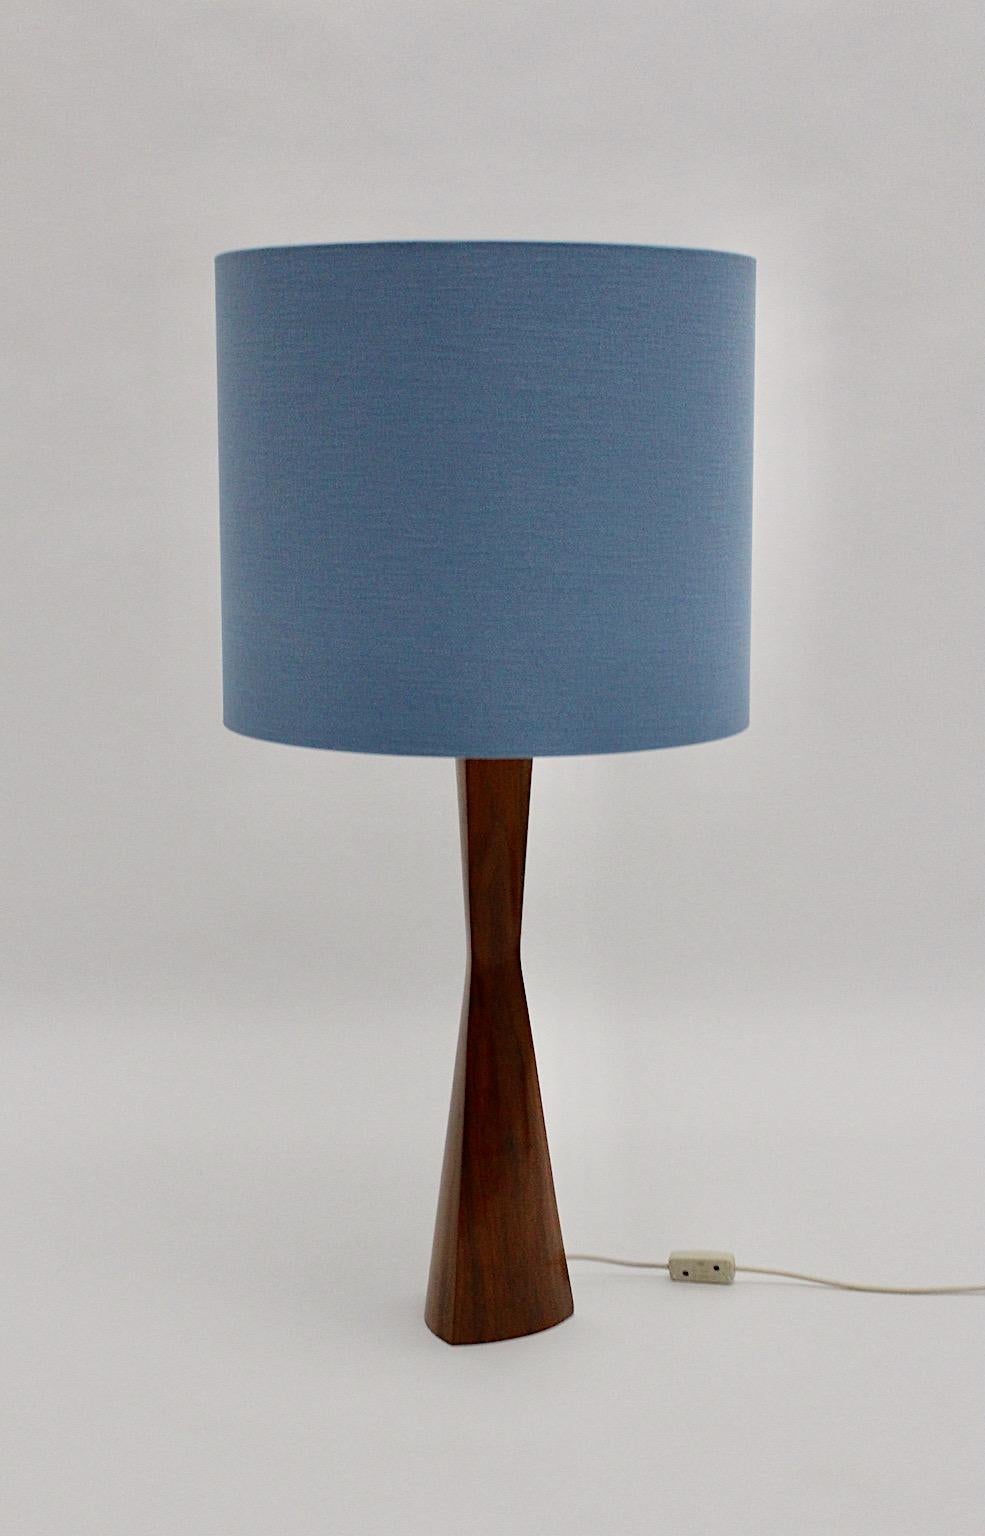 Scandinavian Modern Vintage Teak Table Lamp Blue Lampshade, 1960s, Denmark For Sale 1